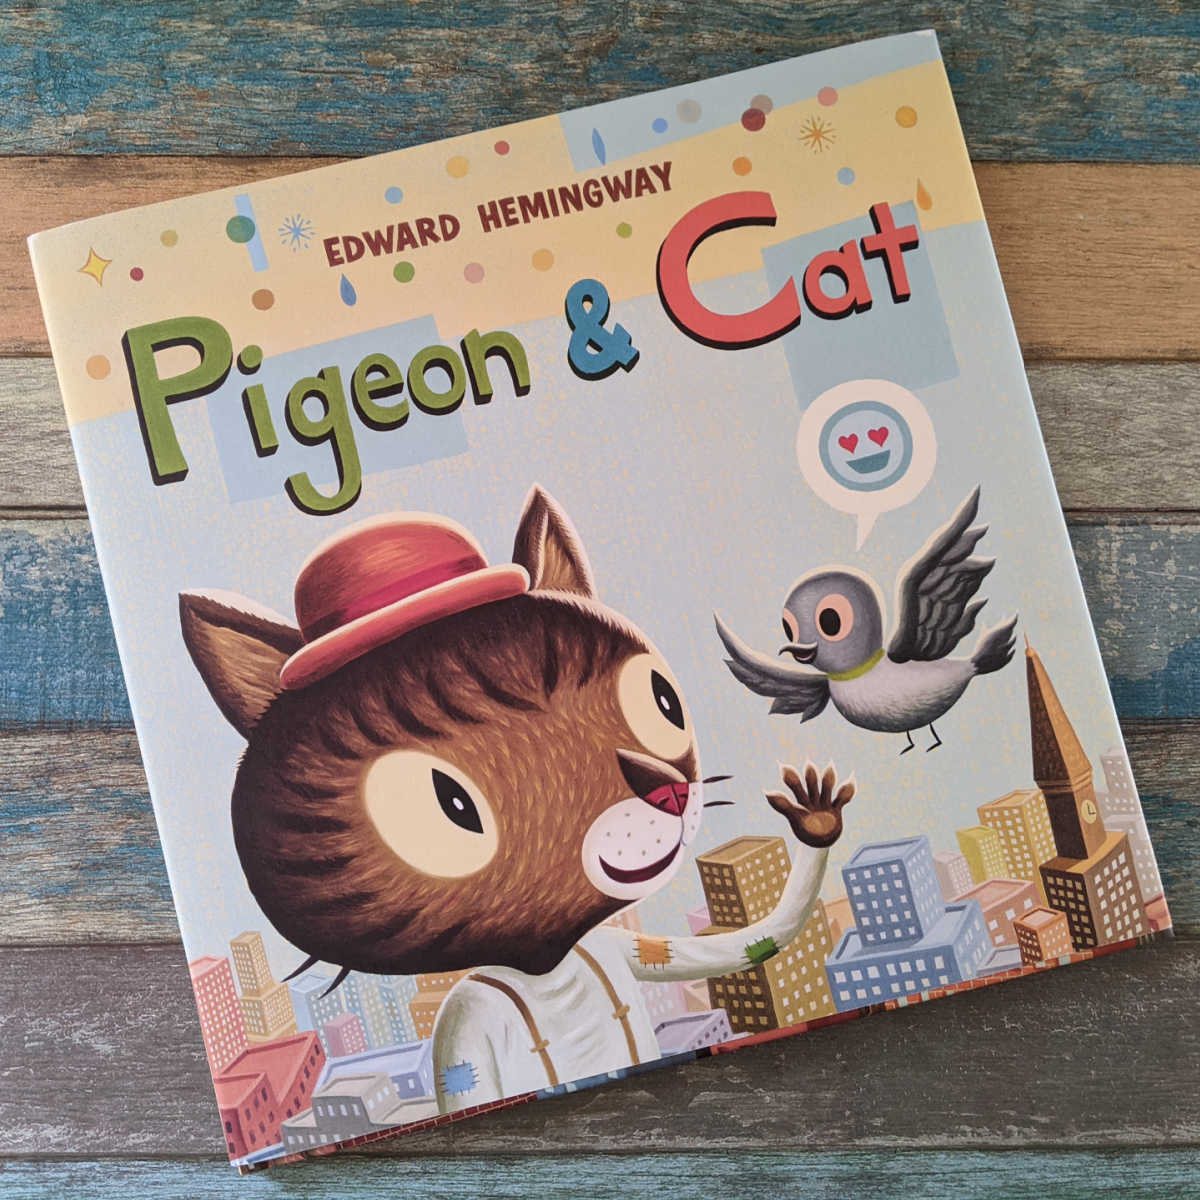 hemingway pigeon and cat book